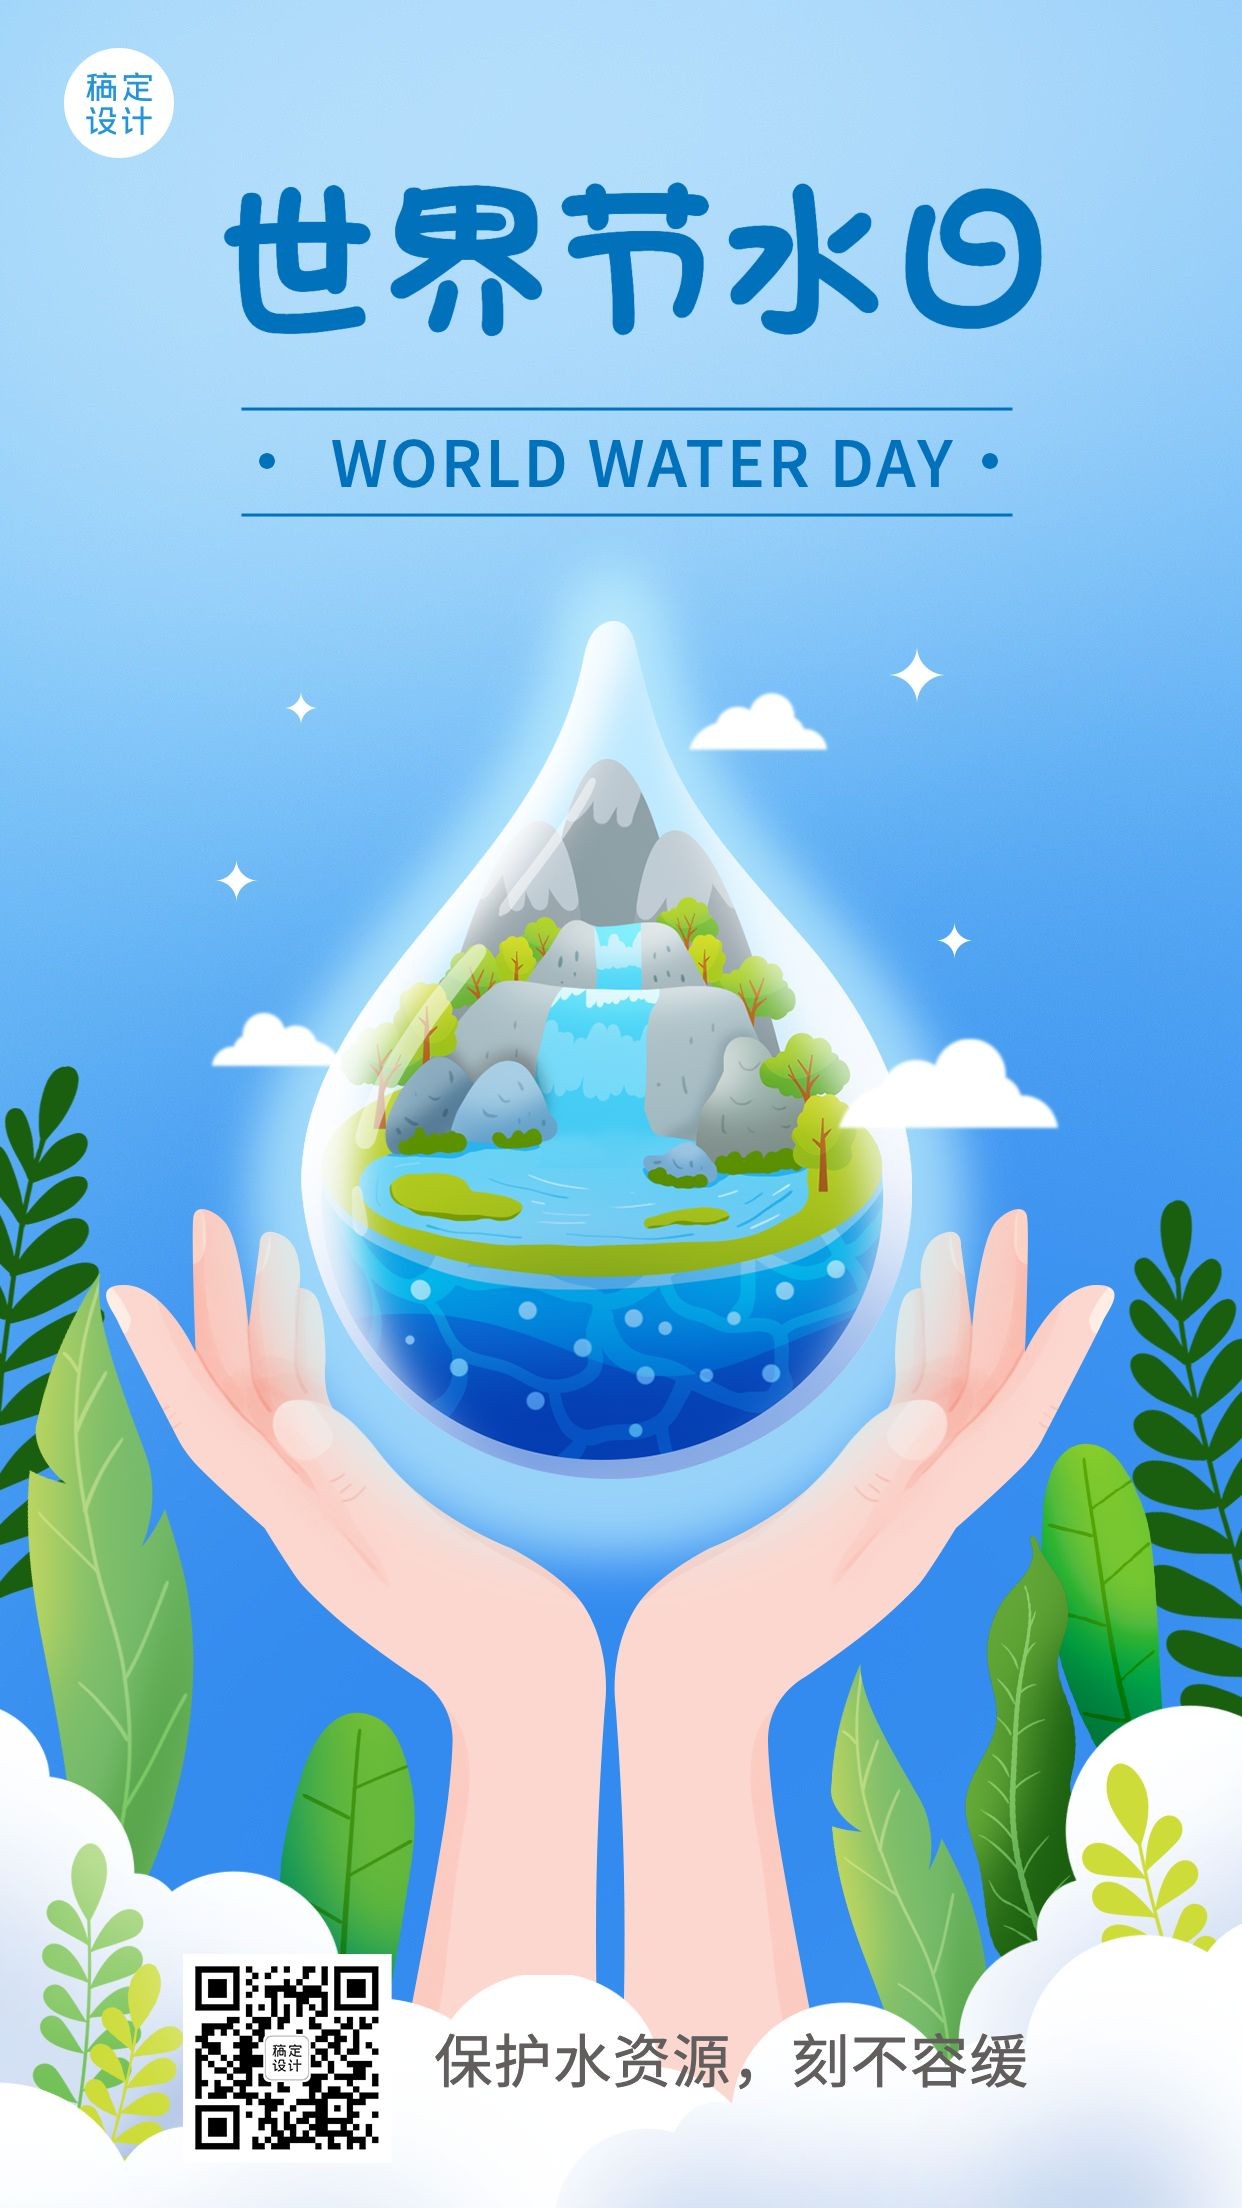 世界节水日节日宣传插画手机海报